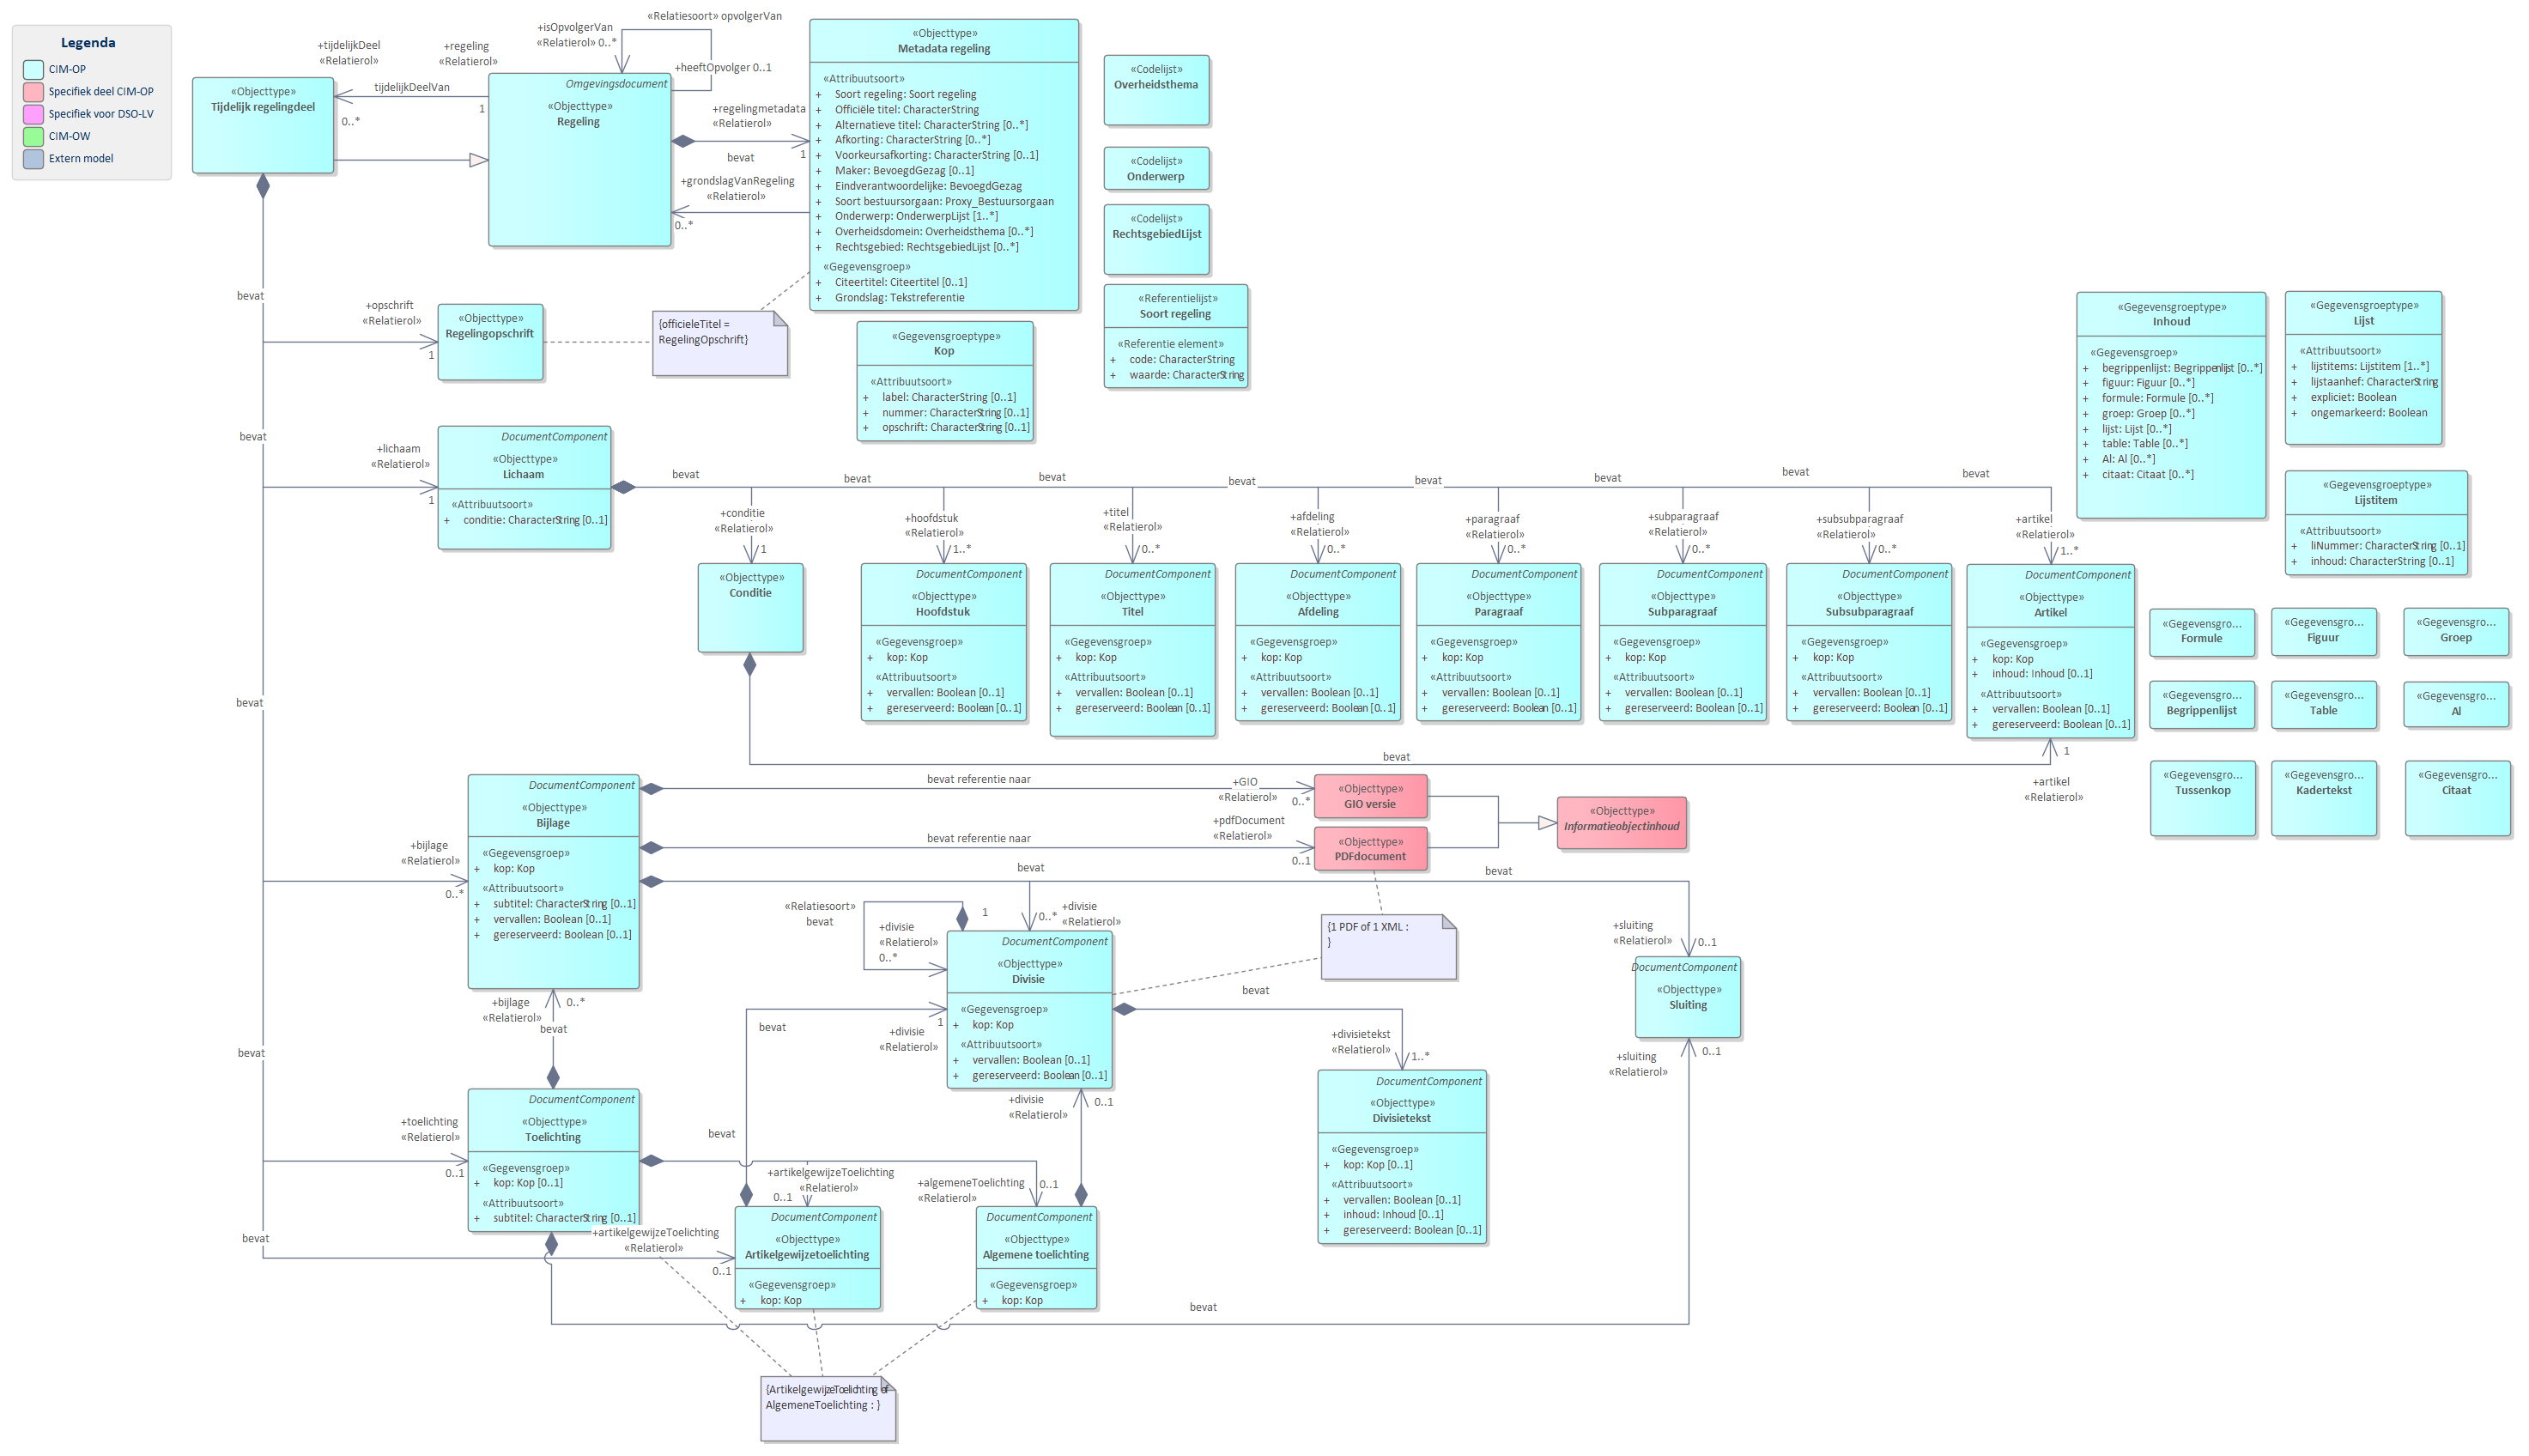 Diagram 
                        UML diagram van `Tijdelijk regelingdeel`.
                        `Tijdelijk regelingdeel` is het model dat moet worden gebruikt wanneer een tijdelijk regelingdeel wordt toegevoegd aan de geconsolideerde regeling van omgevingsplan of omgevingsverordening: bij een voorbereidingsbesluit en bij een reactieve interventie.
                        
                        
                           `Metadata regeling` bevat de gegevens over een regeling zoals titel en maker.
                        
                        
                        
                        
                           `Opschrift`
                           `Lichaam`
                           `Bijlage`
                           `Toelichting`
                           `Artikelgewijzetoelichting` of `Algemene toelichting`.
                        
                        
                        De meeste van delen van de basisonderdelen zijn weer verder opgedeeld in onderdelen.
                        
                        
                           
                              
                                 Referentie naar STOP
                              
                           
                        
                     